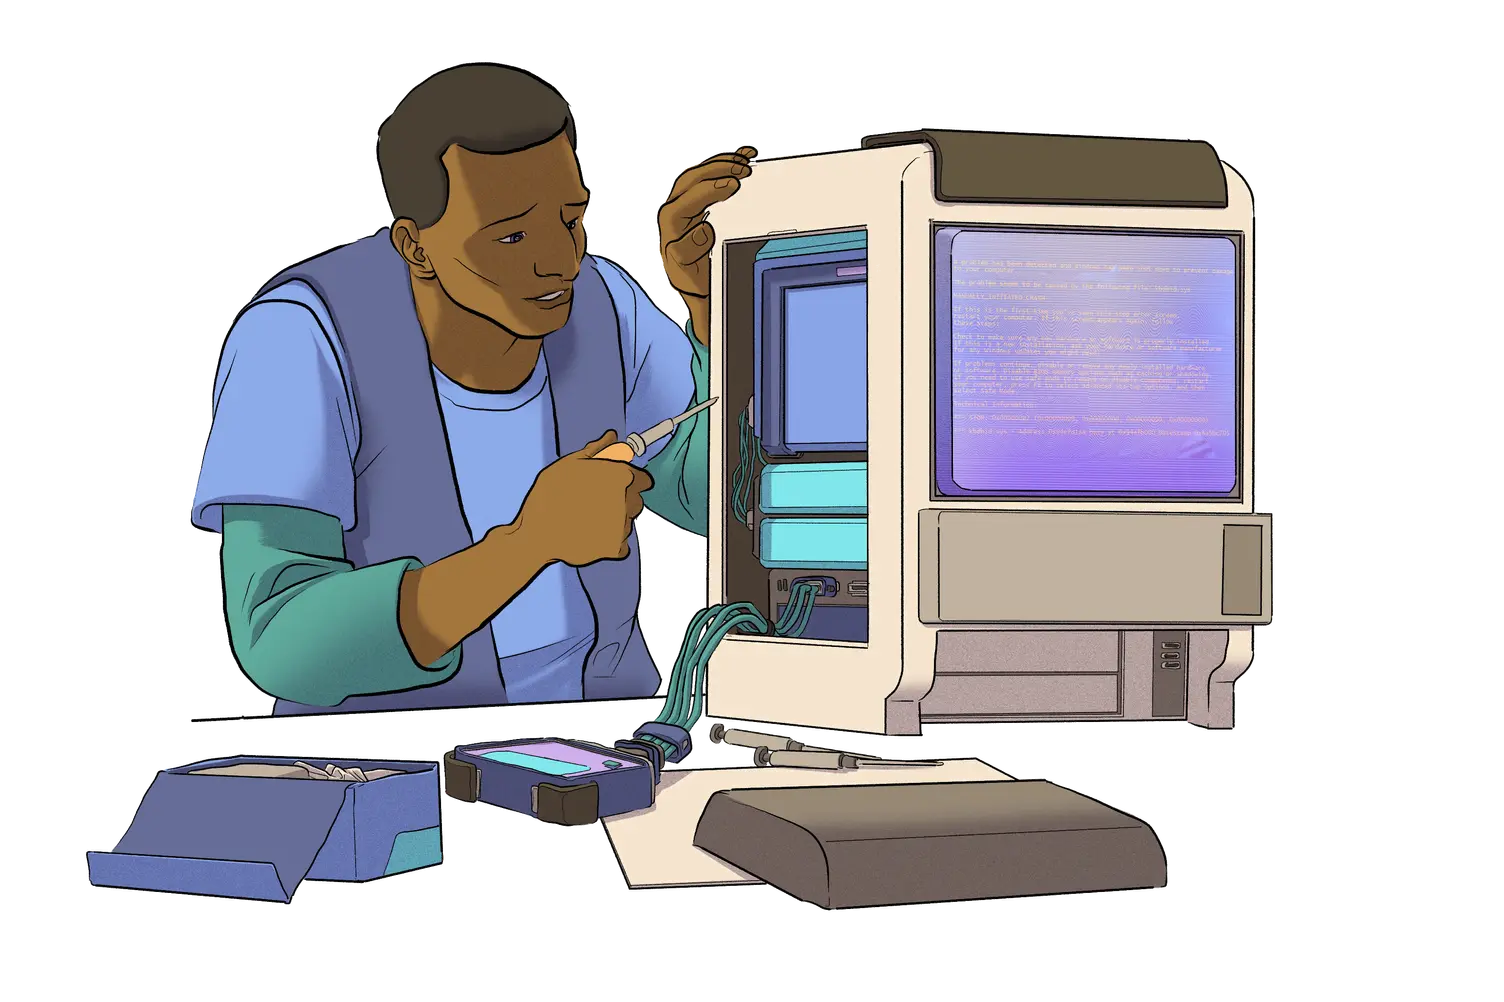 컴퓨터로 작업 중인 사람의 그림.